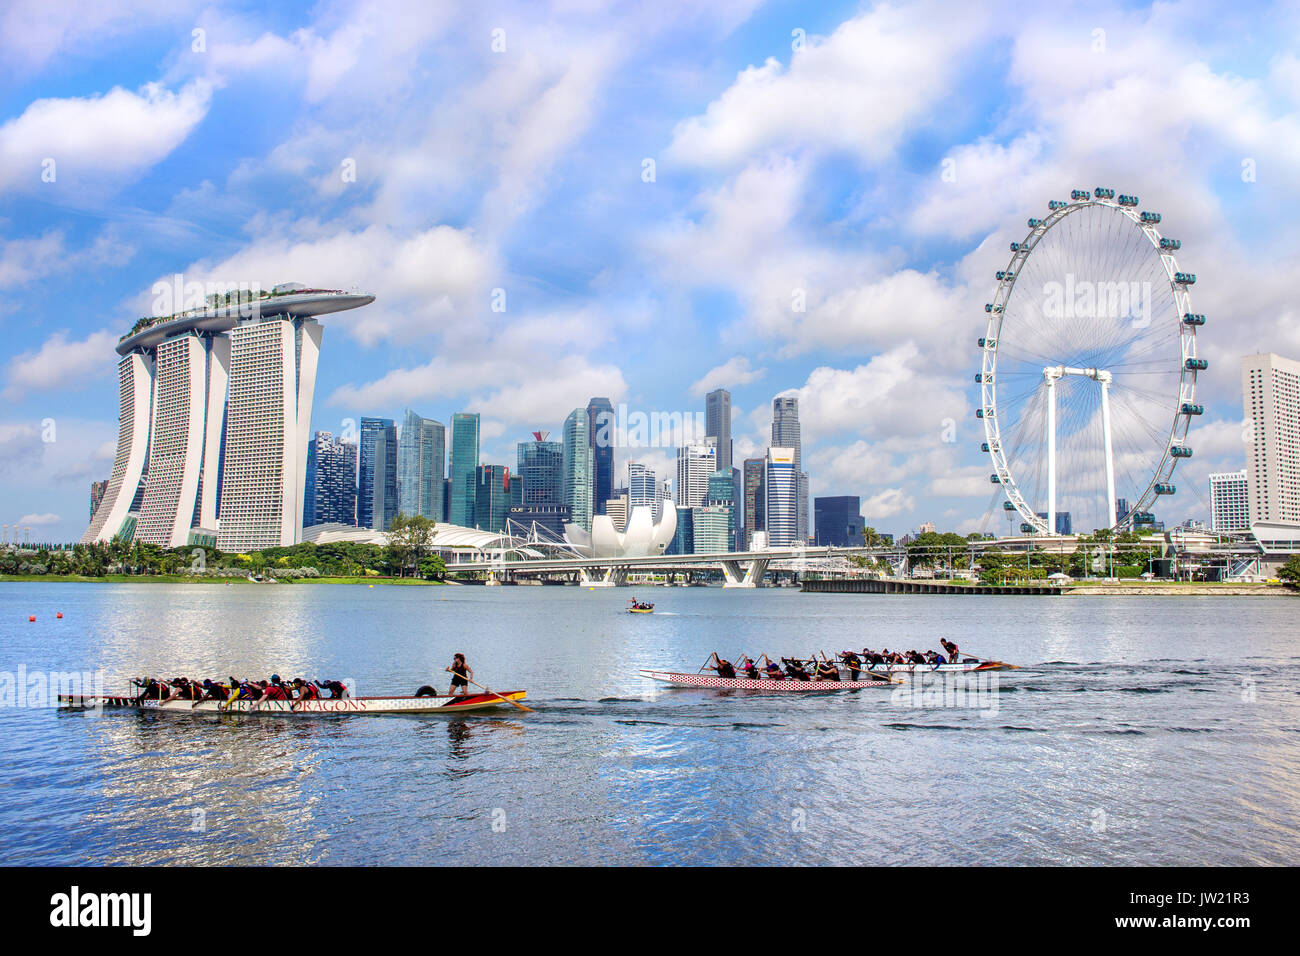 Il paesaggio della città di Singapore il distretto finanziario con il Marina Bay sands hotel ang Singapore Flyer, con persone che praticano dragon boat kayak come per Foto Stock